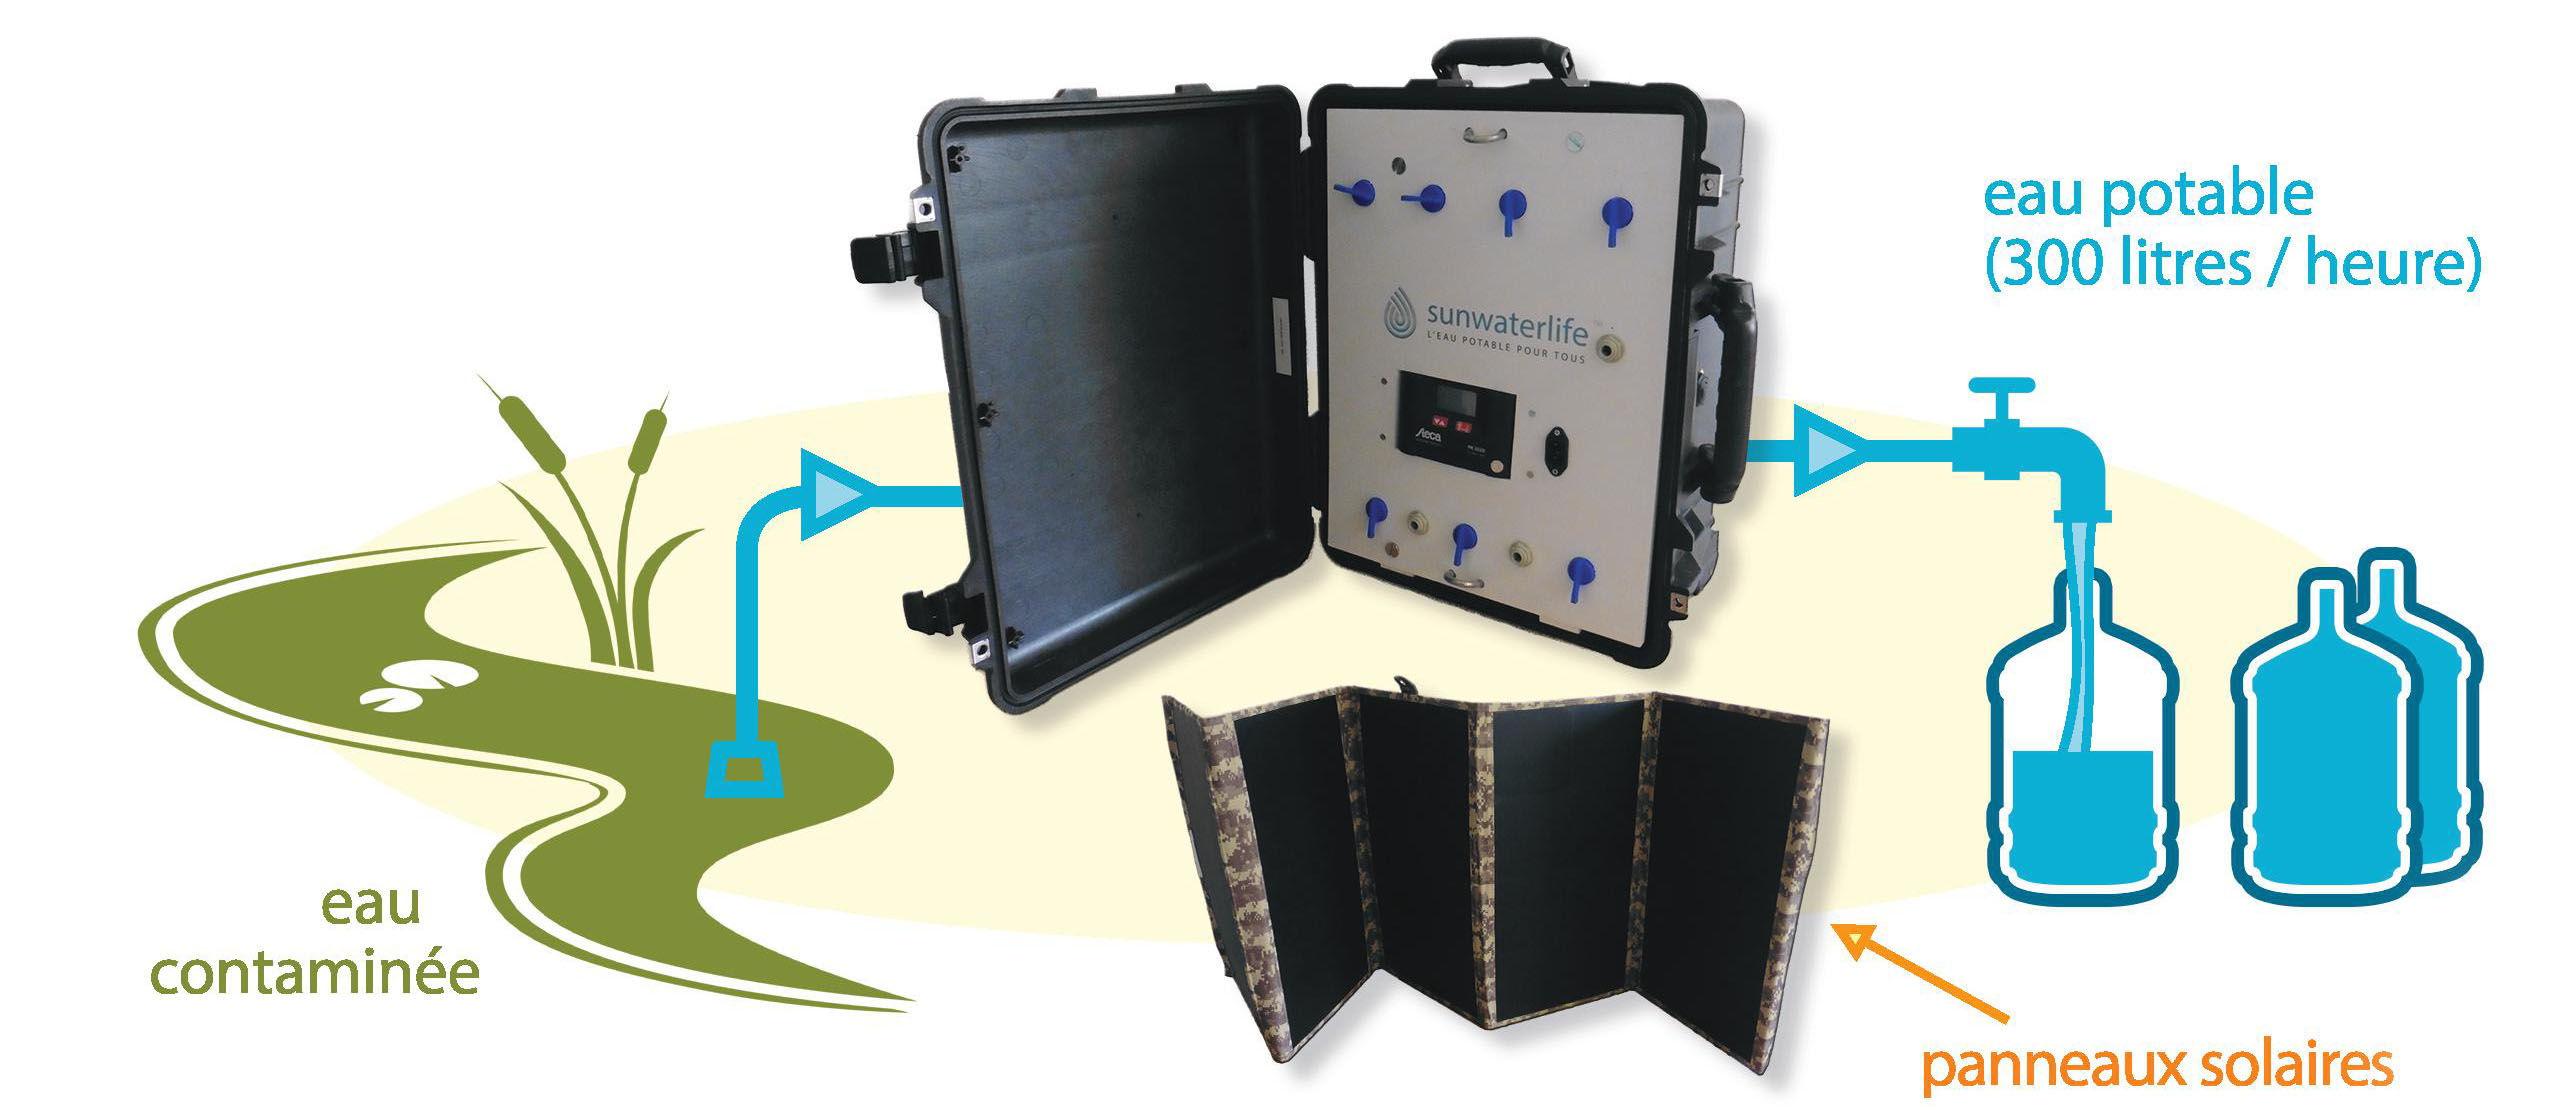 Sunwaterlife : la valise solaire qui produit de l’eau potable !